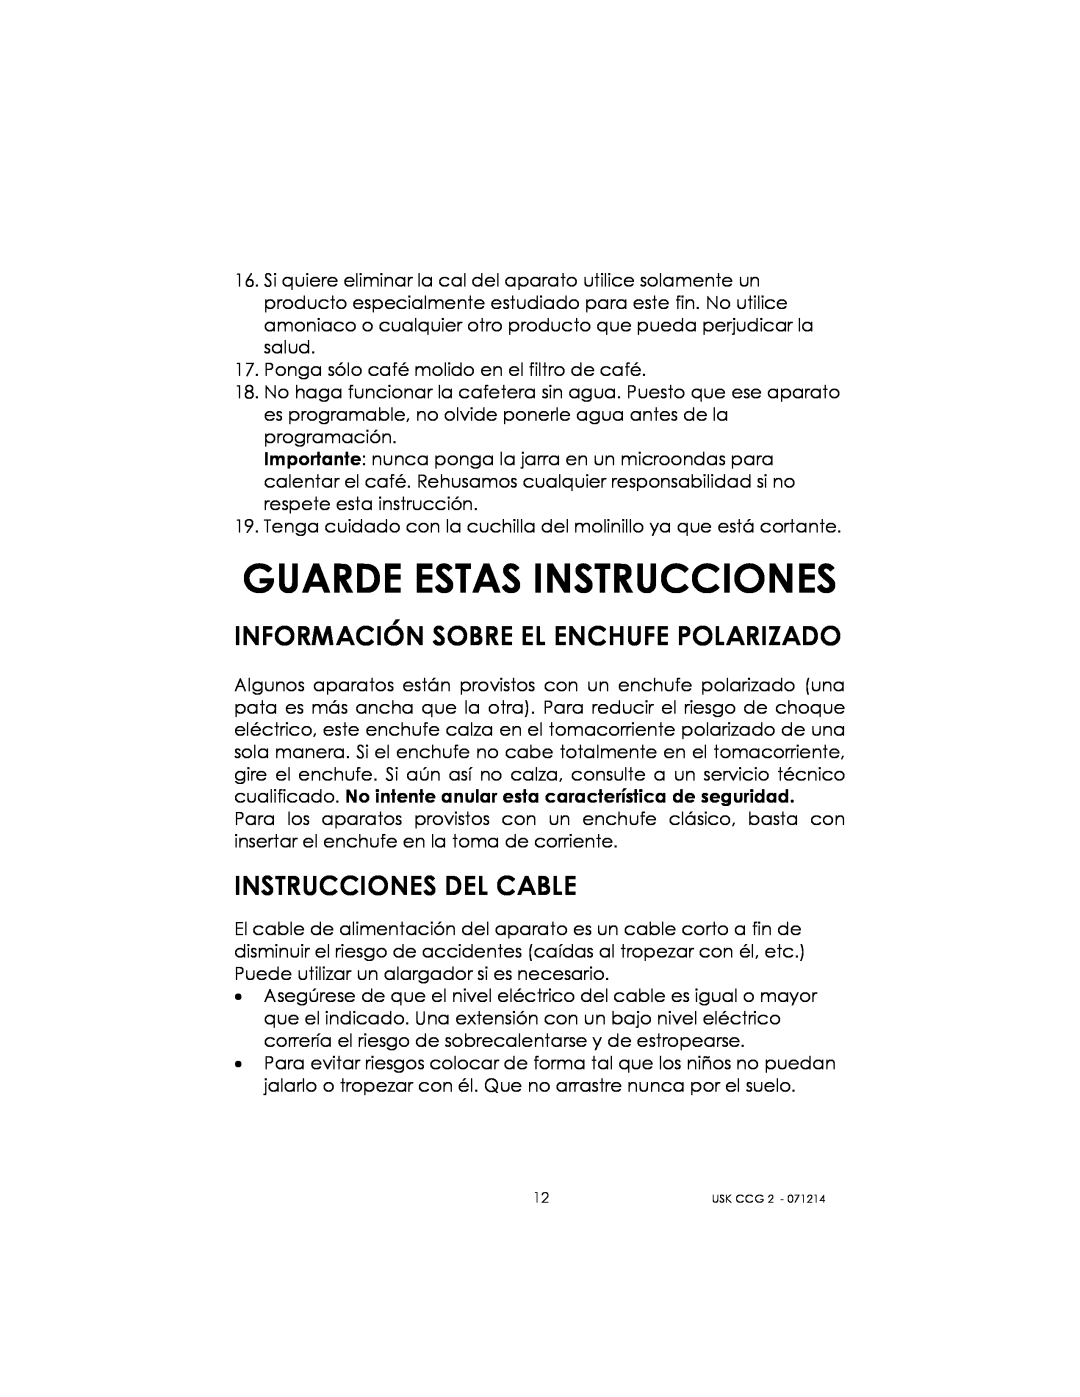 Kalorik USK CCG 2 manual Guarde Estas Instrucciones, Información Sobre El Enchufe Polarizado, Instrucciones Del Cable 